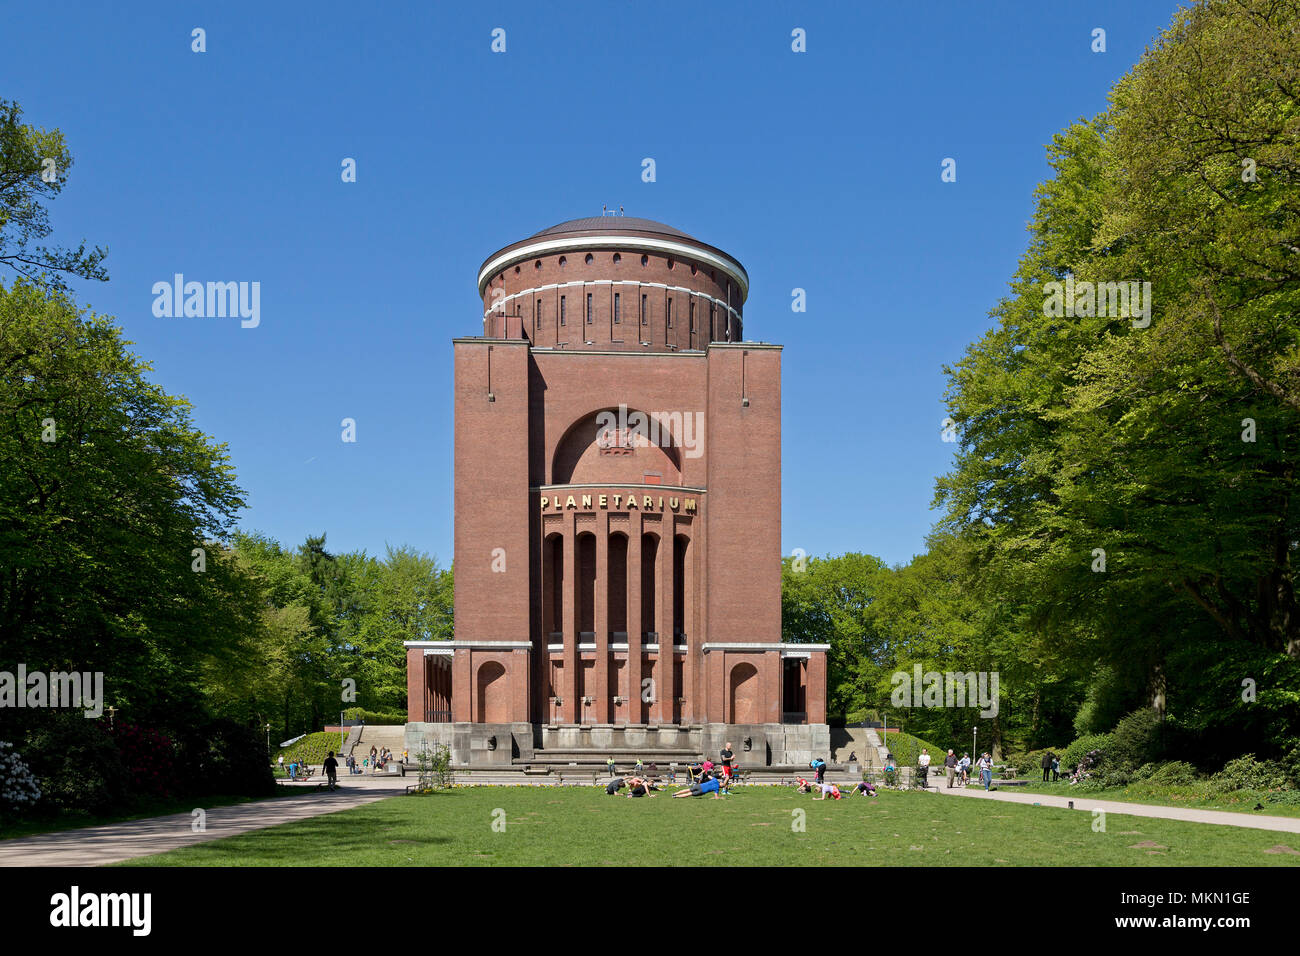 planetarium, Hamburg, Germany Stock Photo